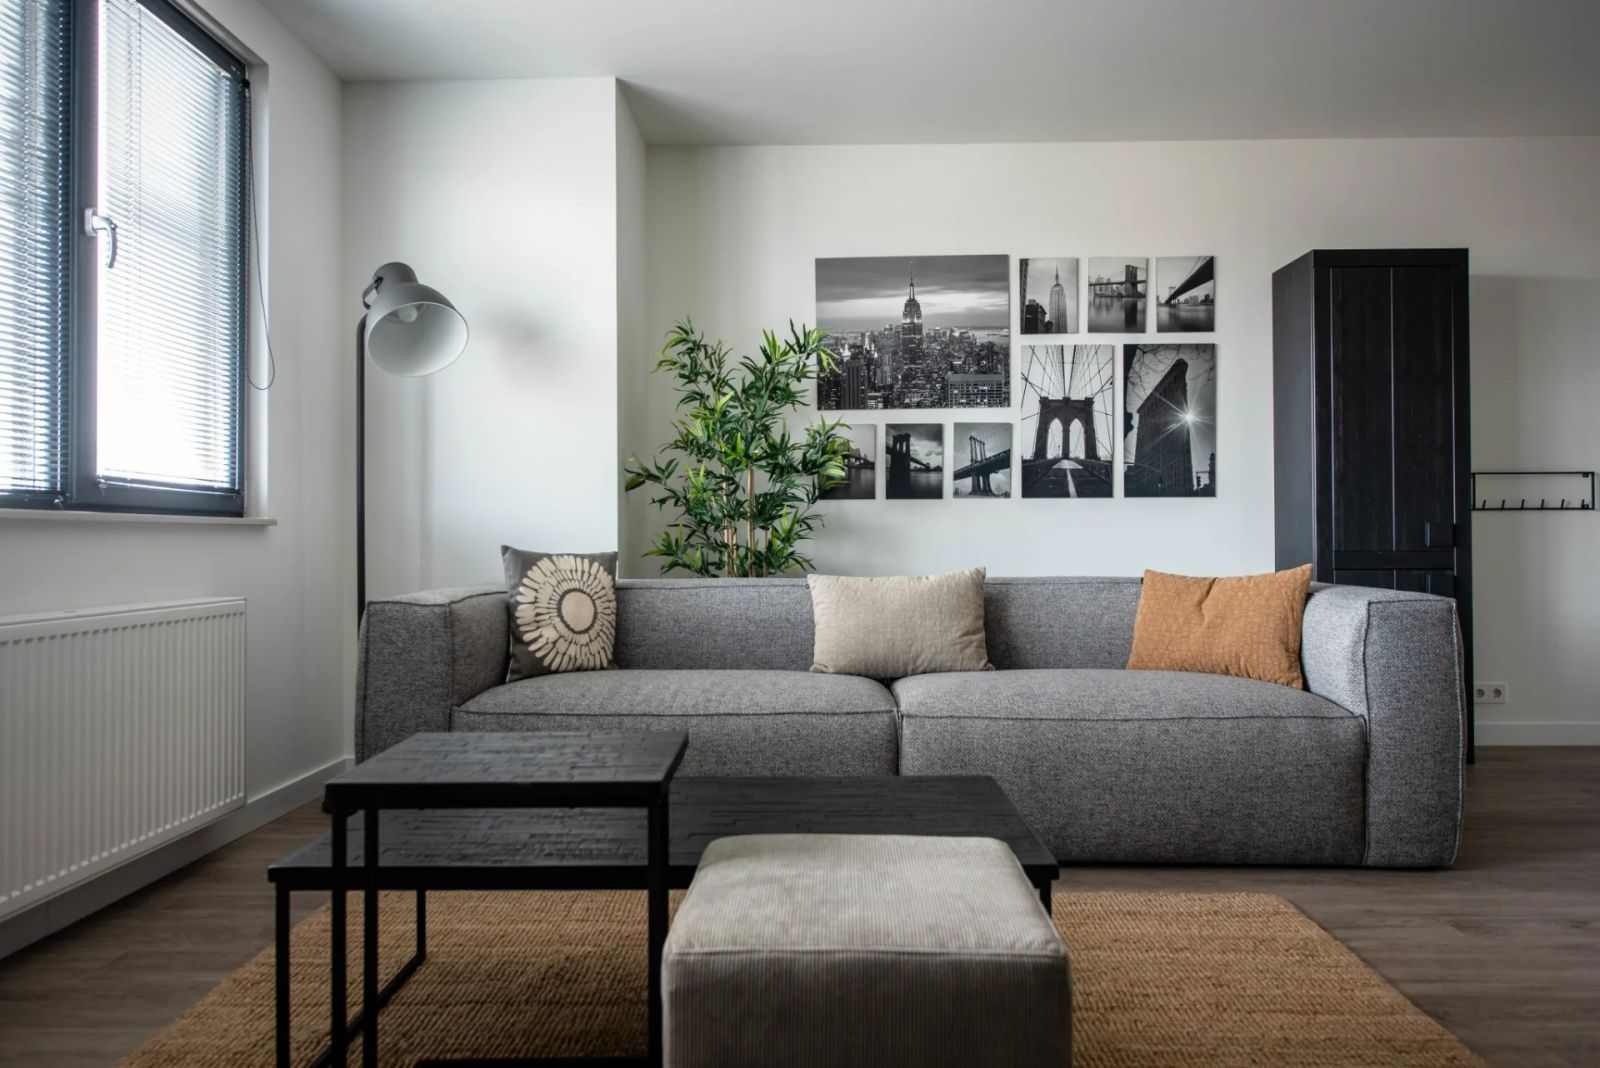 Juno Short Stay appartementen heeft gebruik gemaakt van meubilair van De Eekhoorn voor hun hotel inrichting en project inrichting.